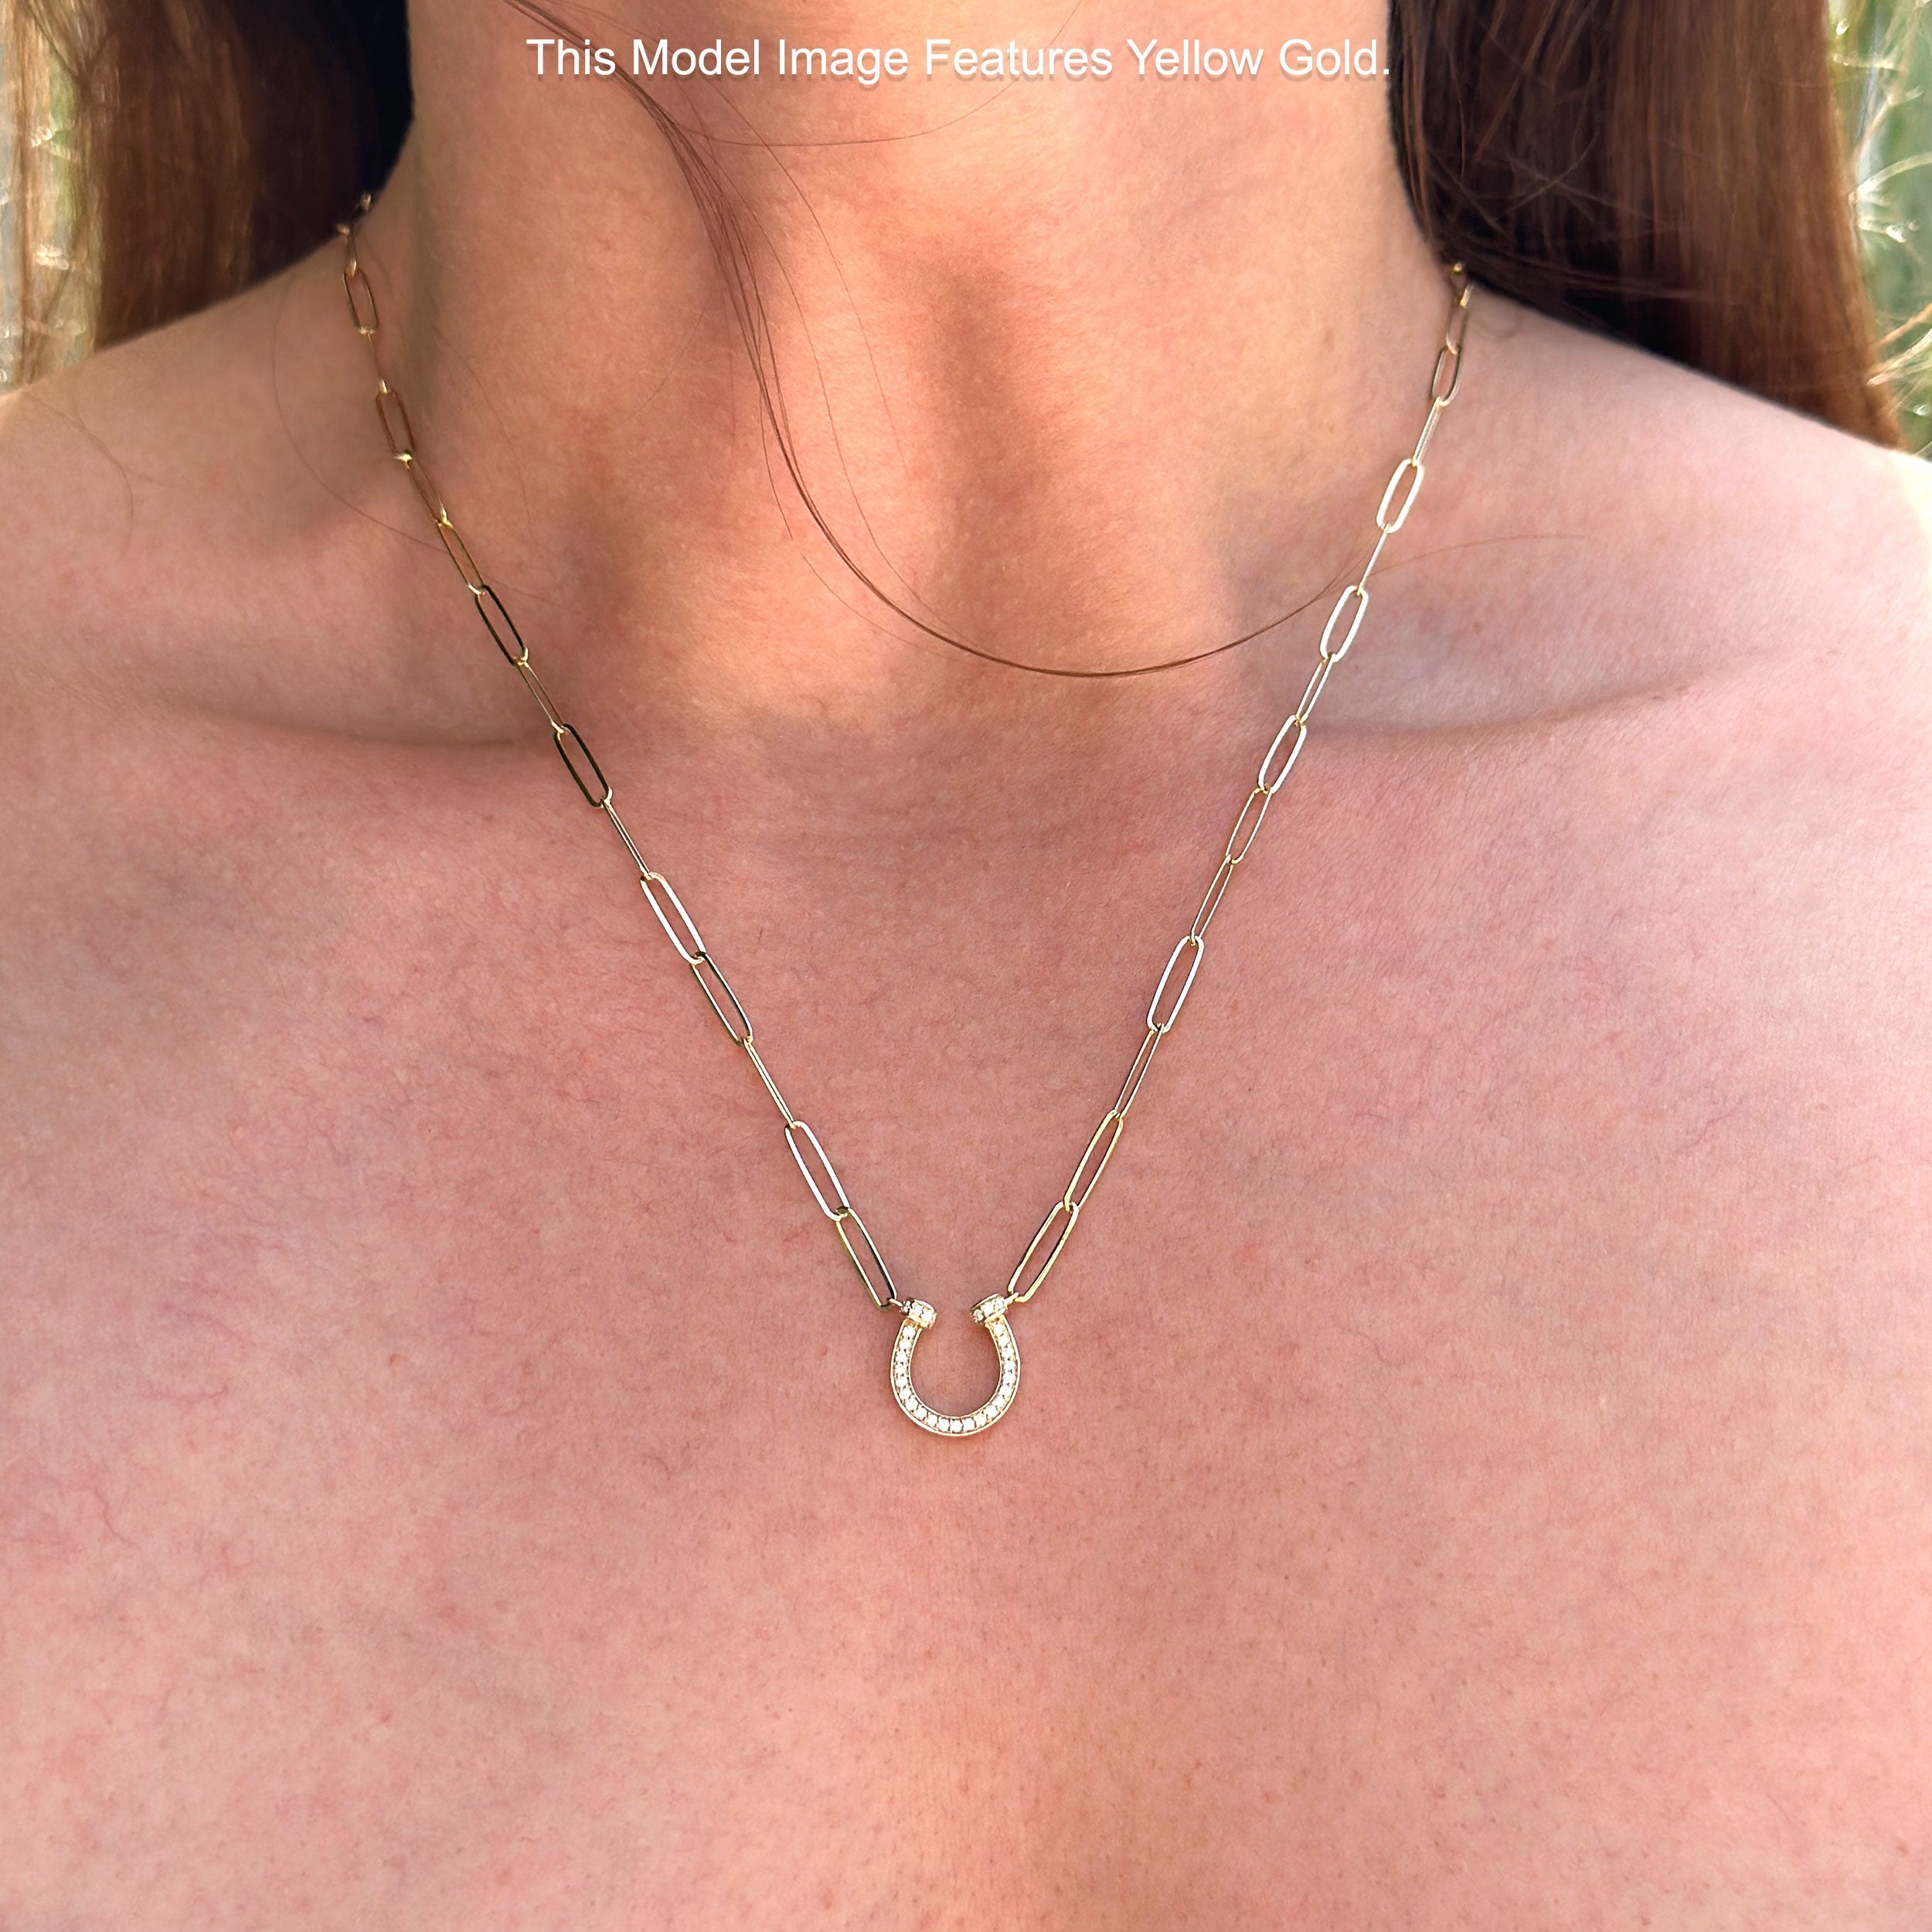 Diamond Horseshoe Necklace